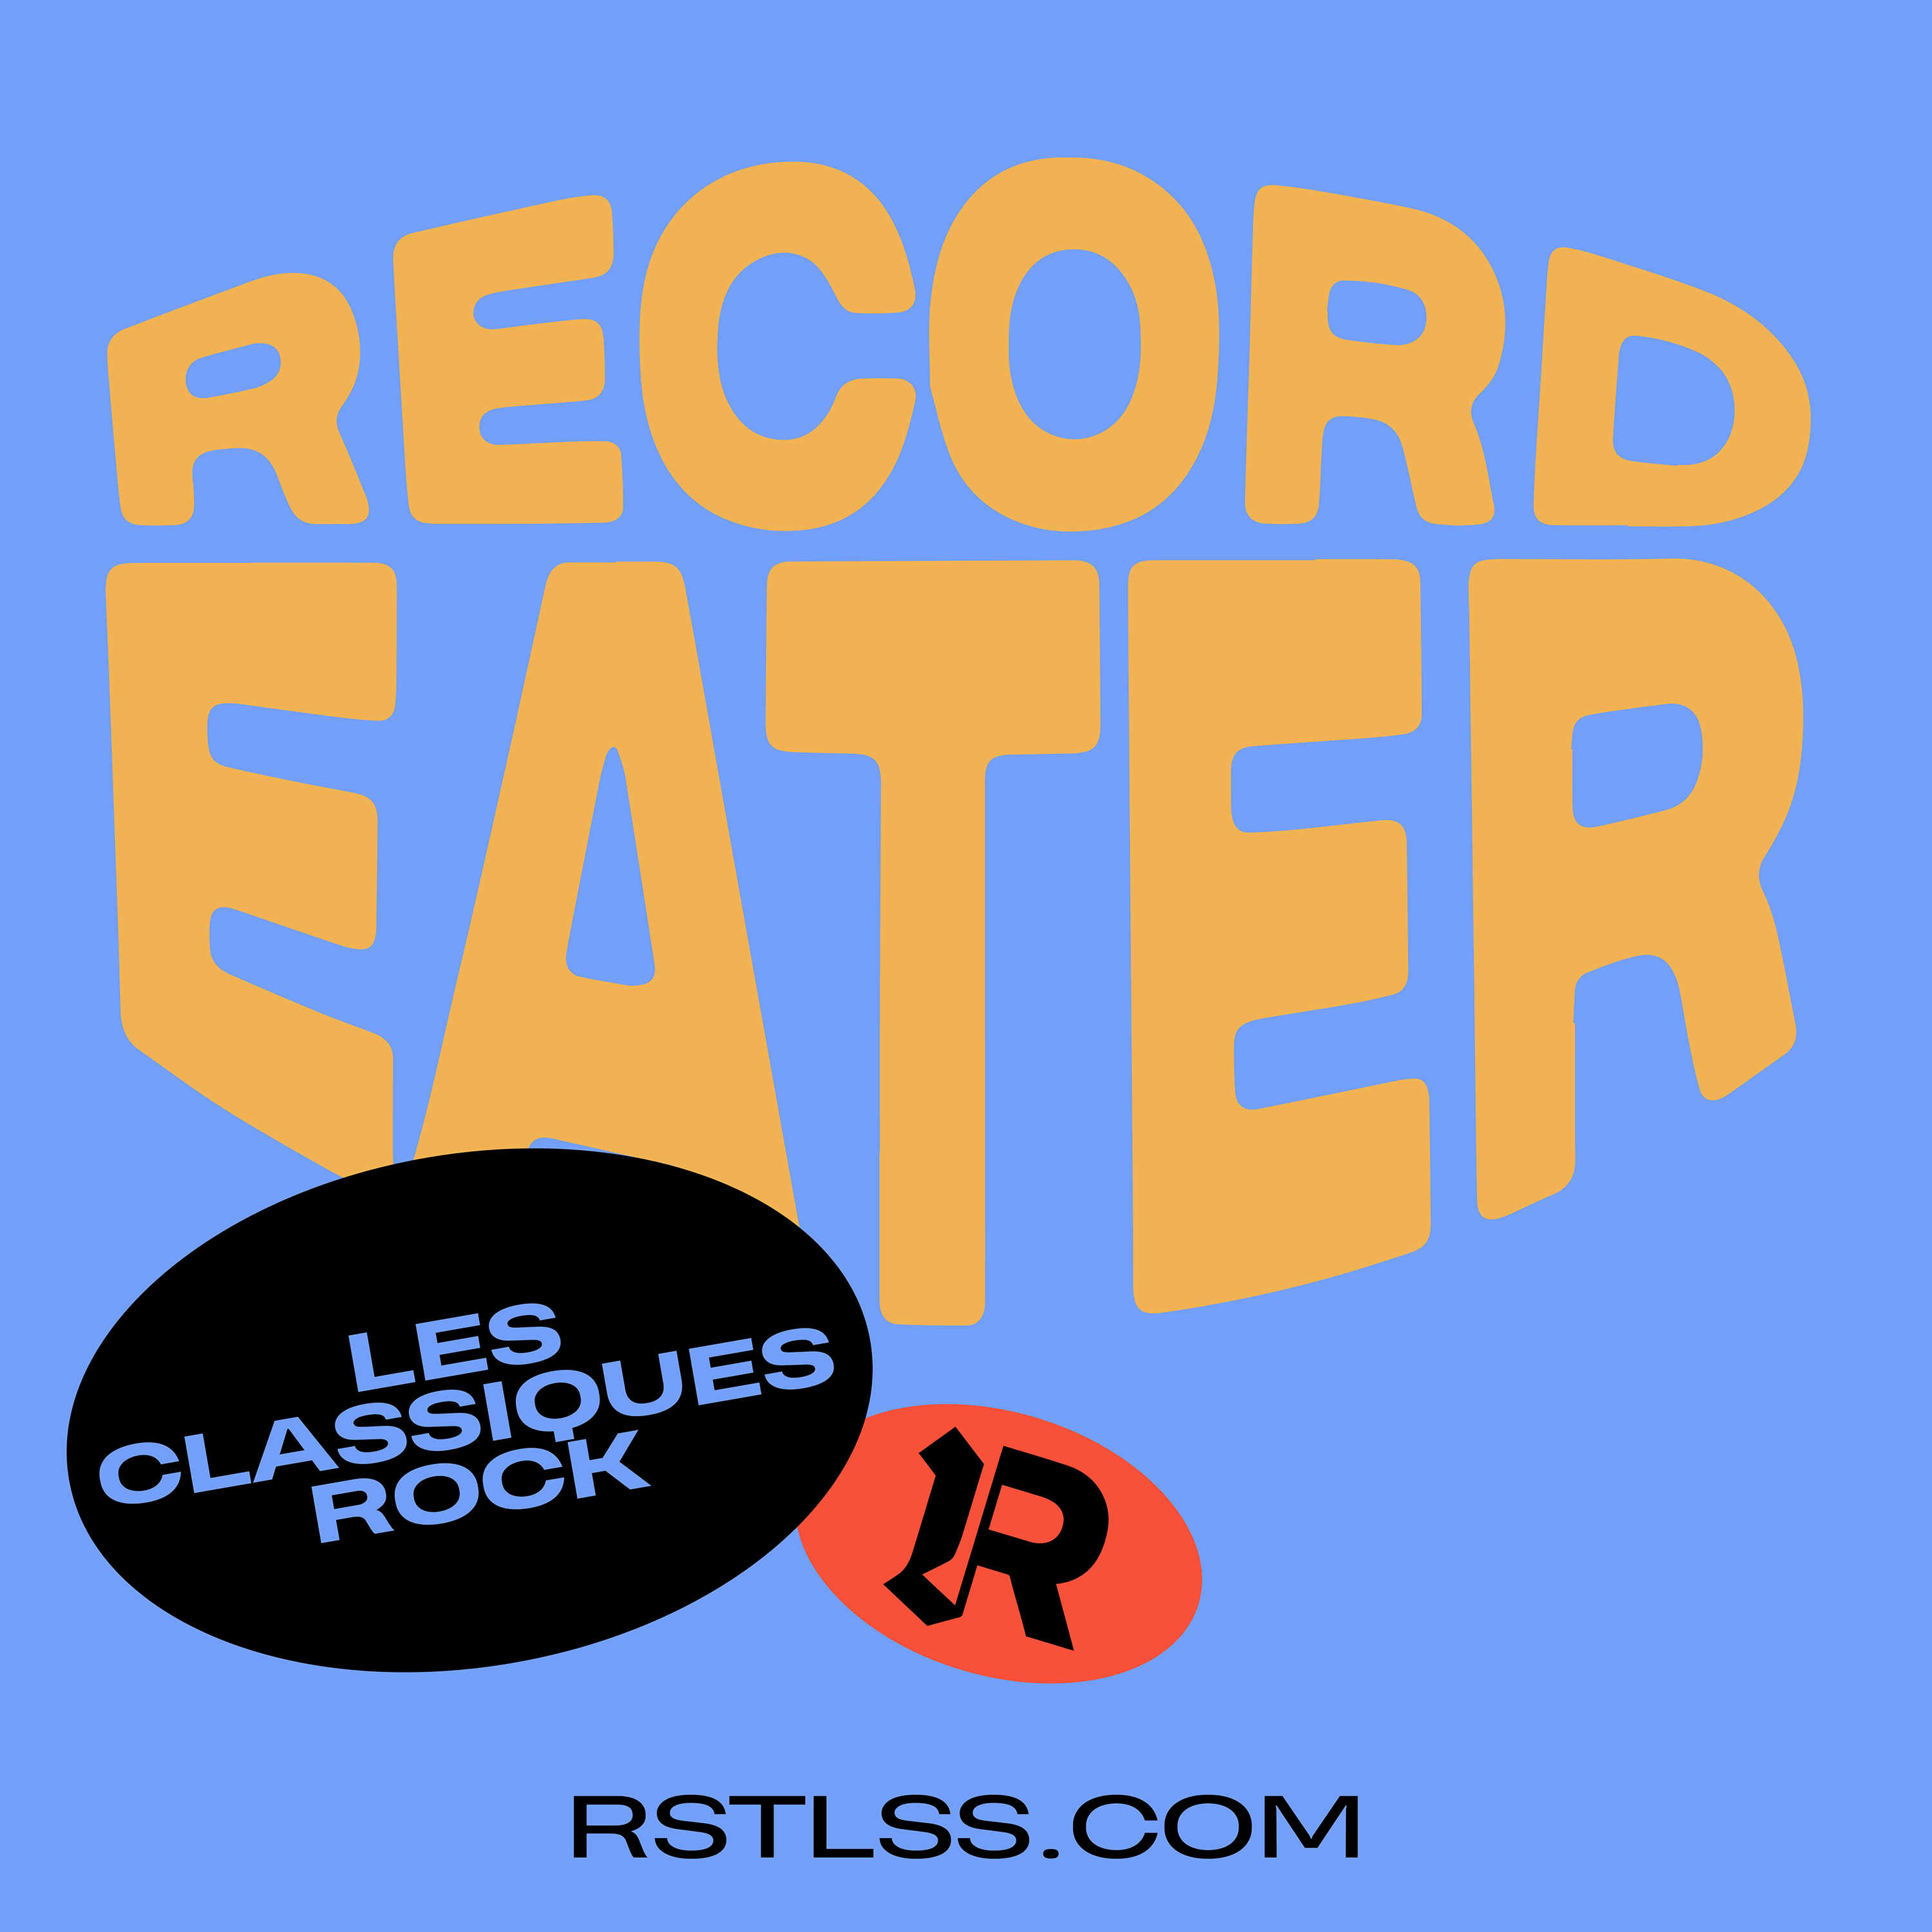 Record Eater - Les classiques rock en vinyle sur RSTLSS